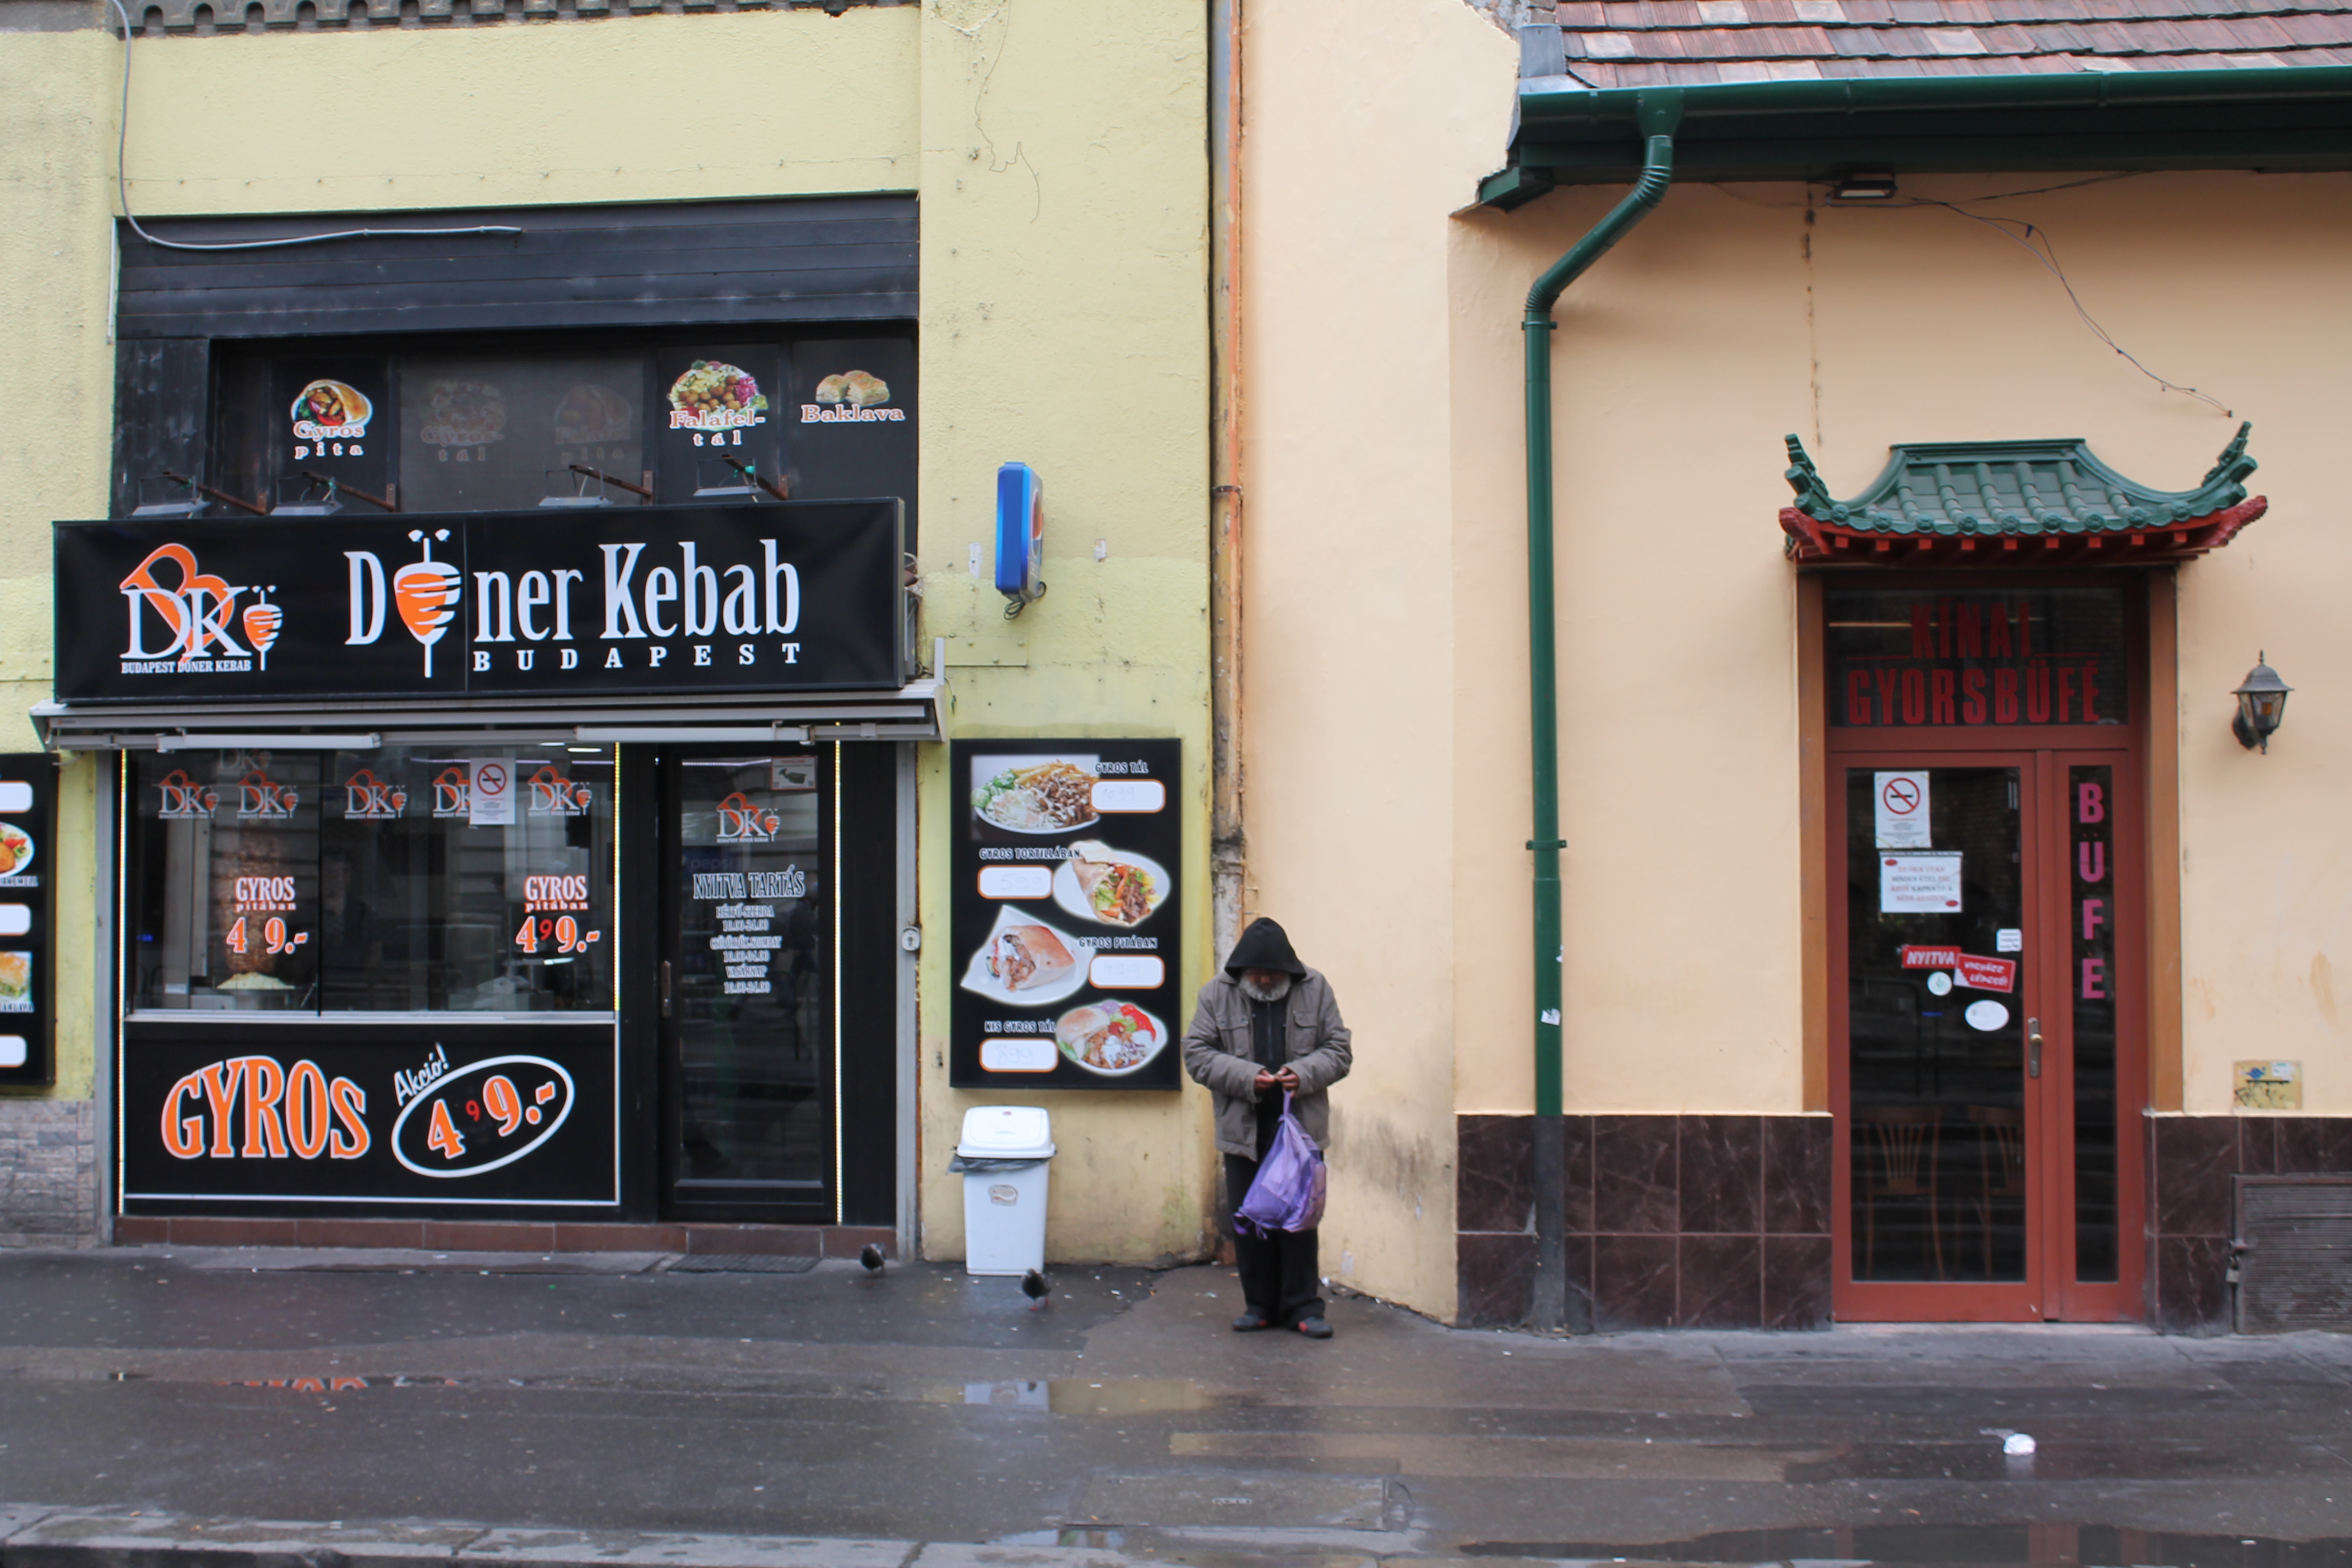 Nigériai fodrászat, pakisztáni étterem, török közért, albán pék - Séta a legszínesebb magyar utcában